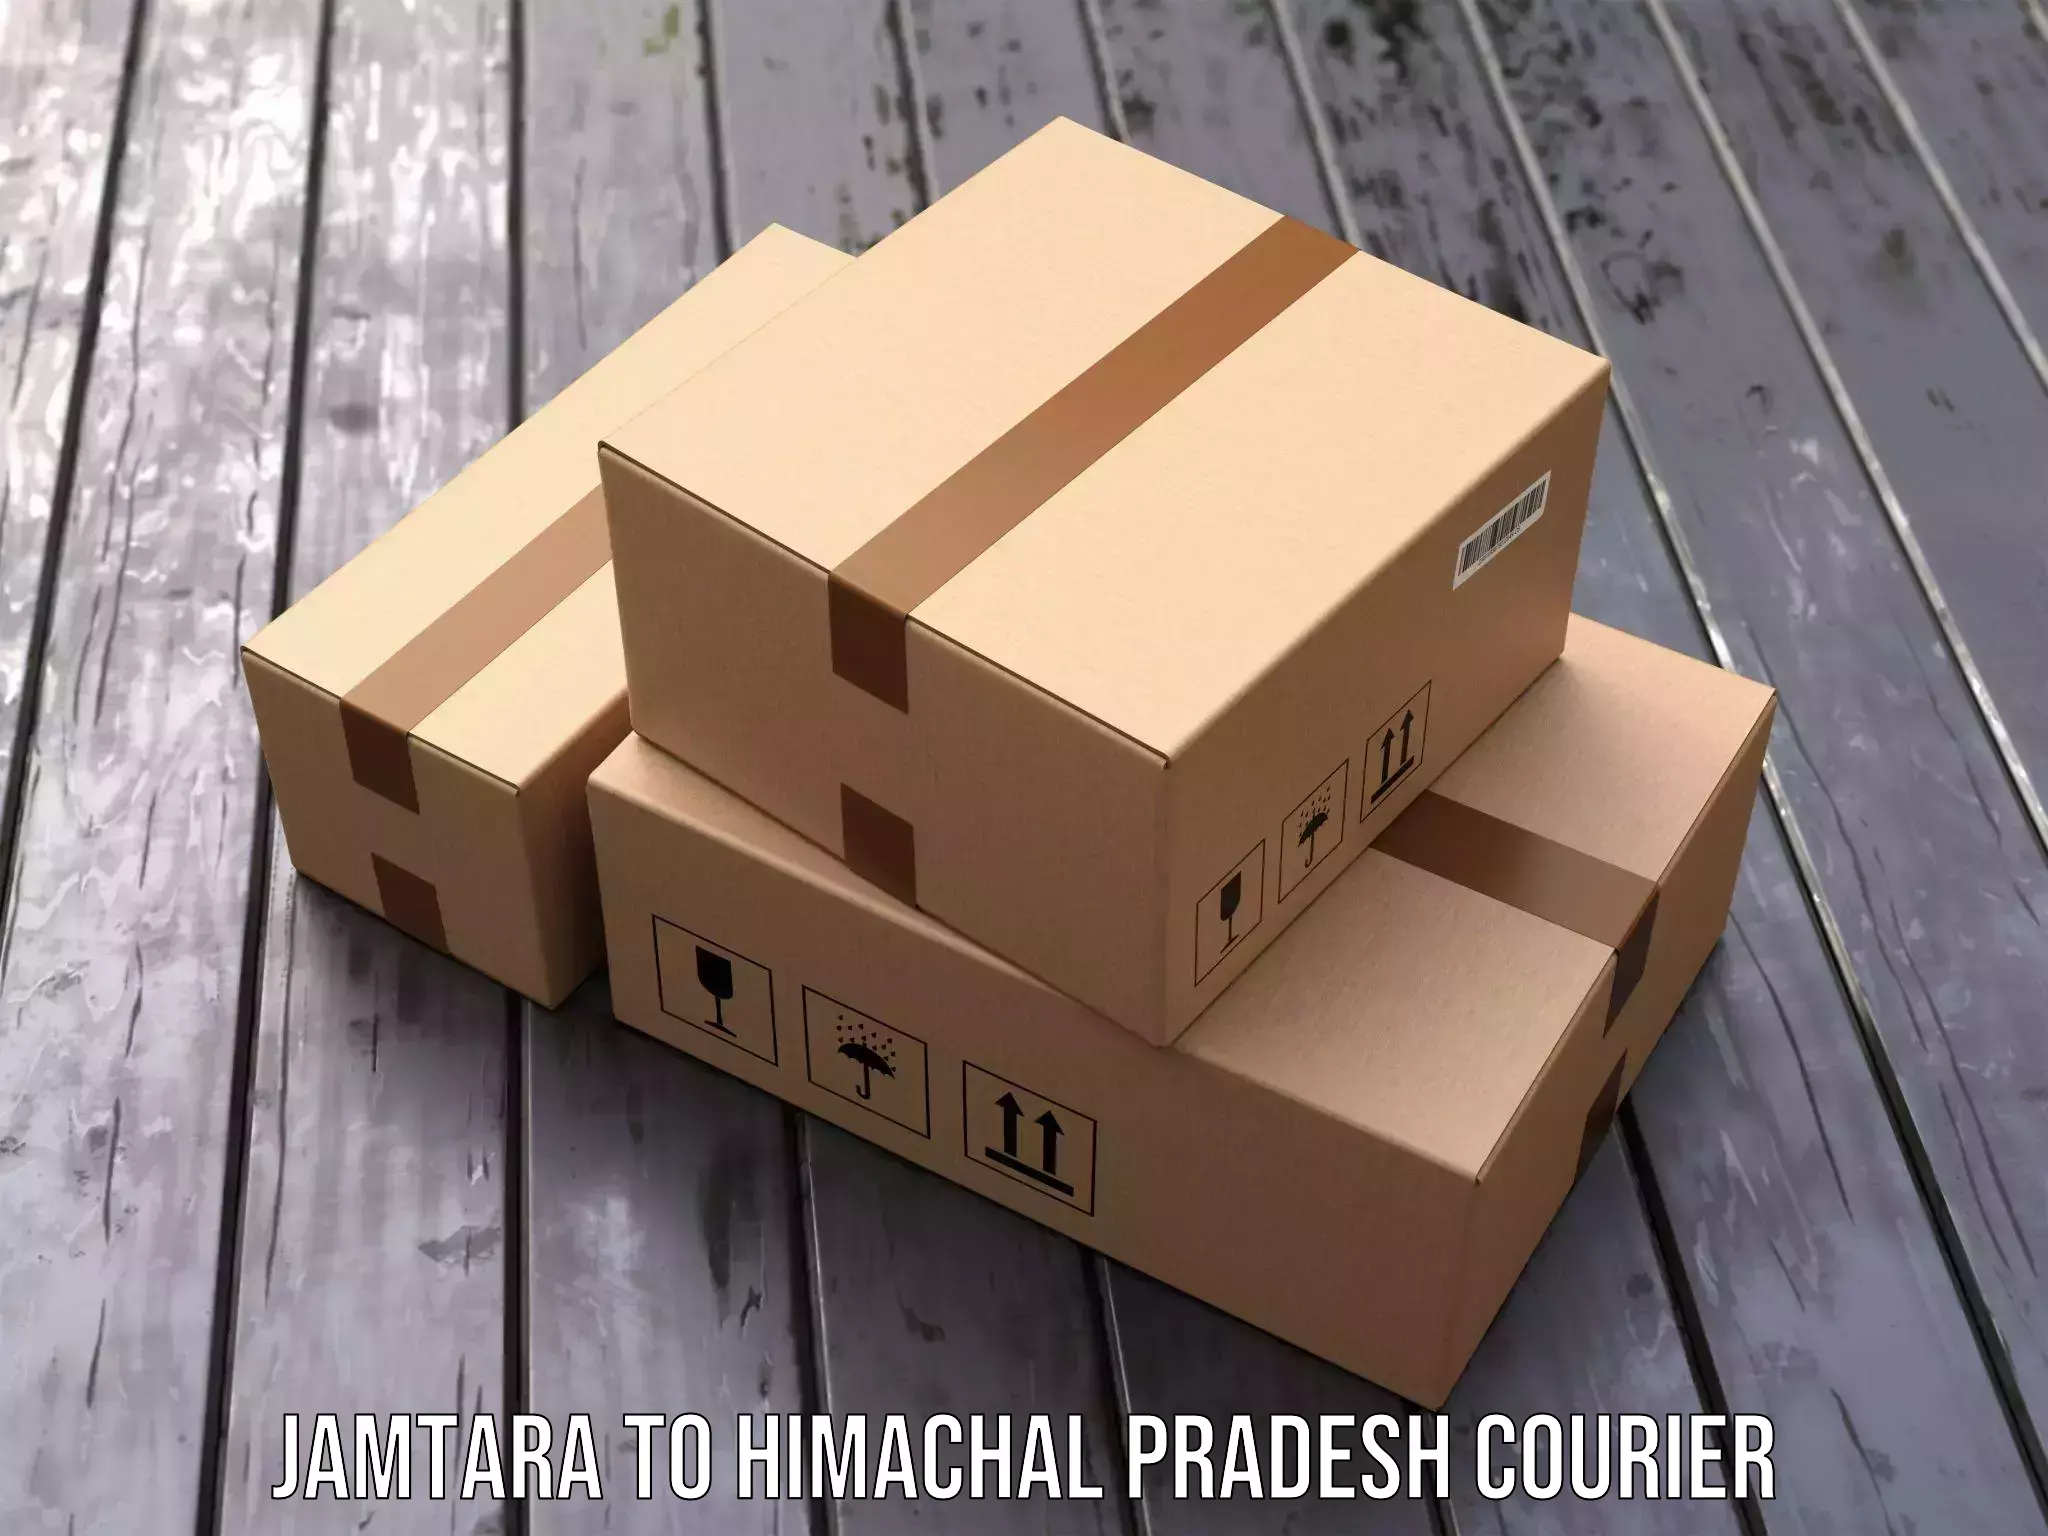 Professional courier handling Jamtara to Kangra